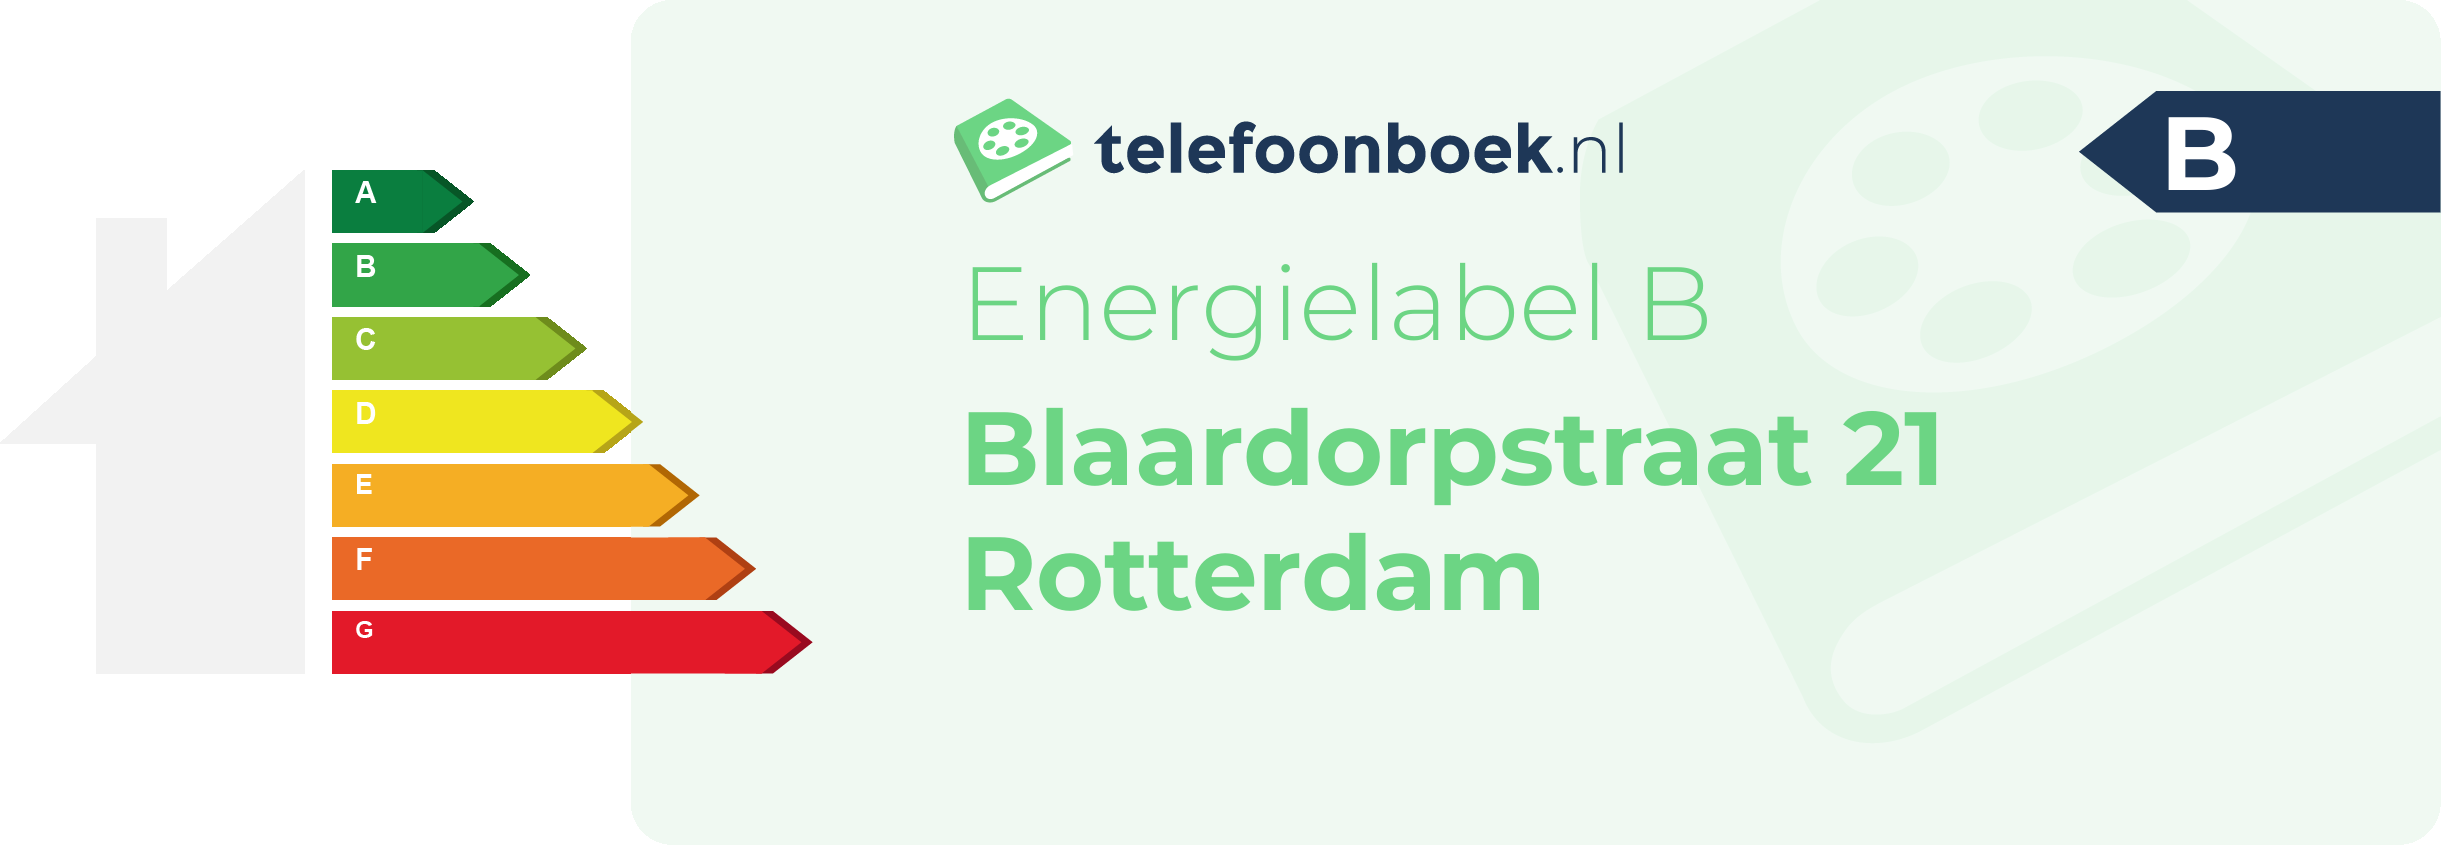 Energielabel Blaardorpstraat 21 Rotterdam